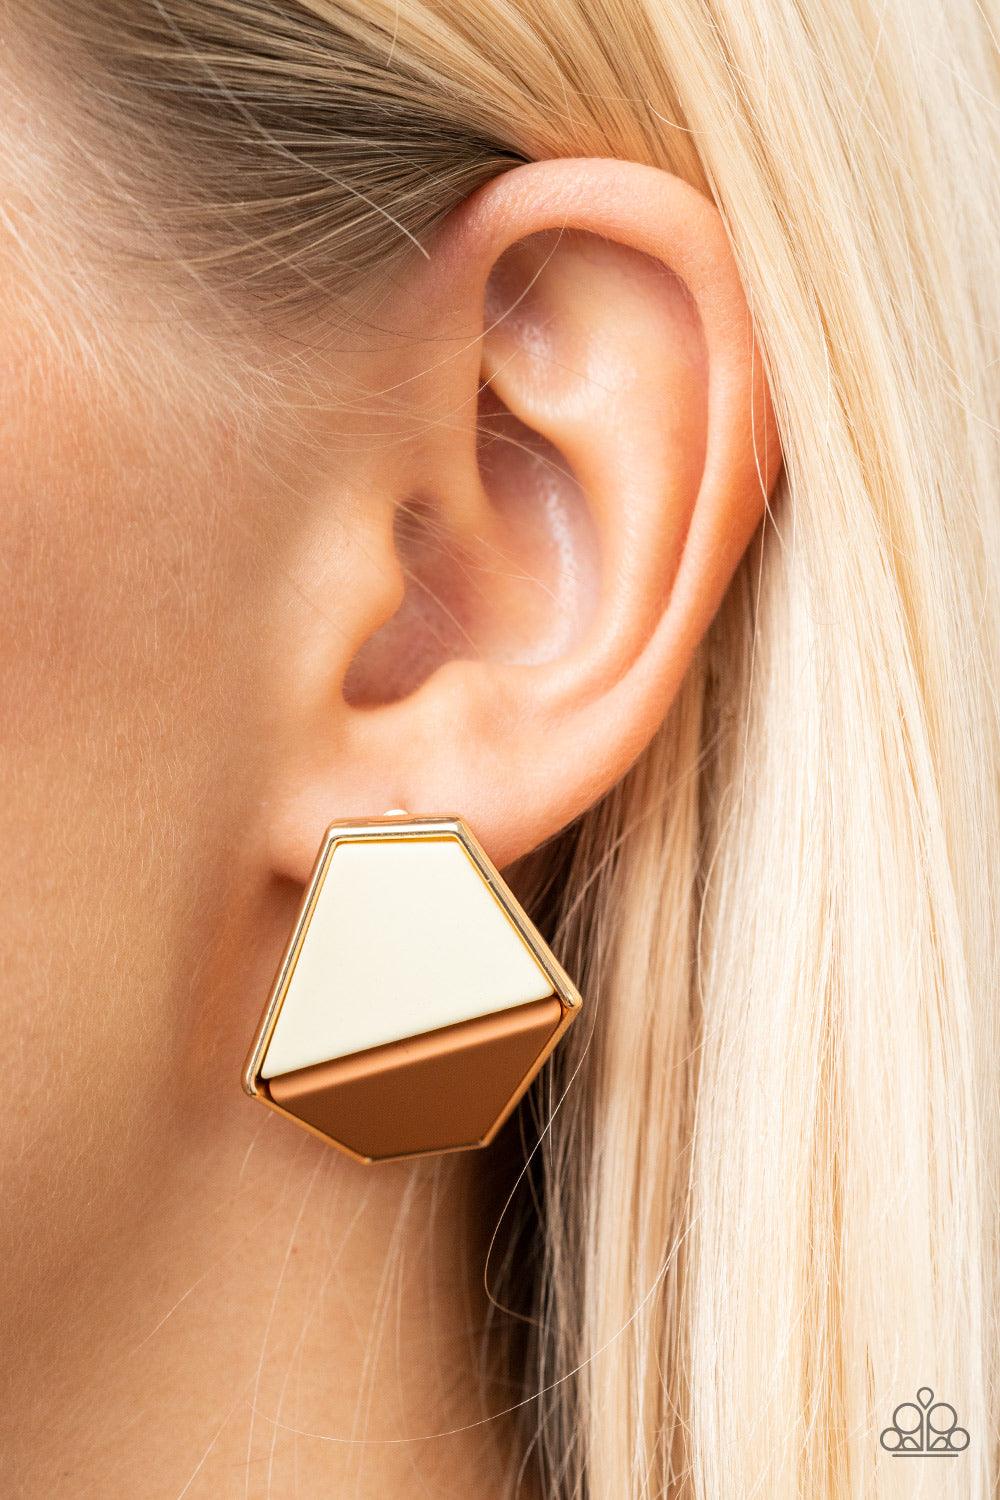 Generically Geometric Brown Earrings - Jewelry by Bretta